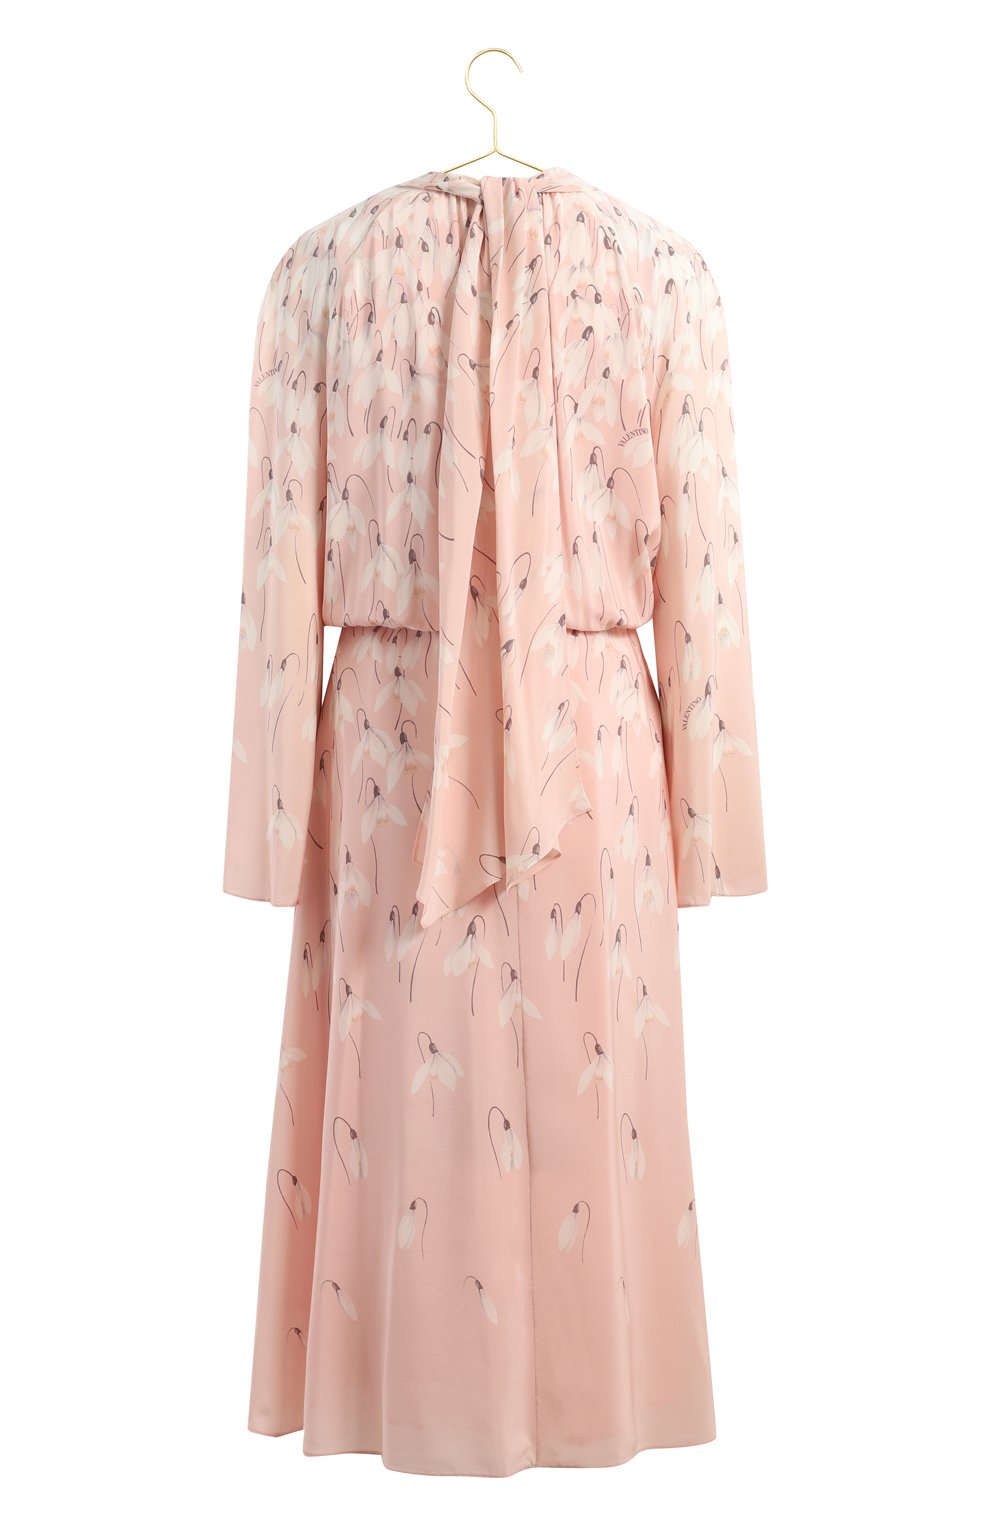 Шелковое платье | Valentino | Розовый - 2